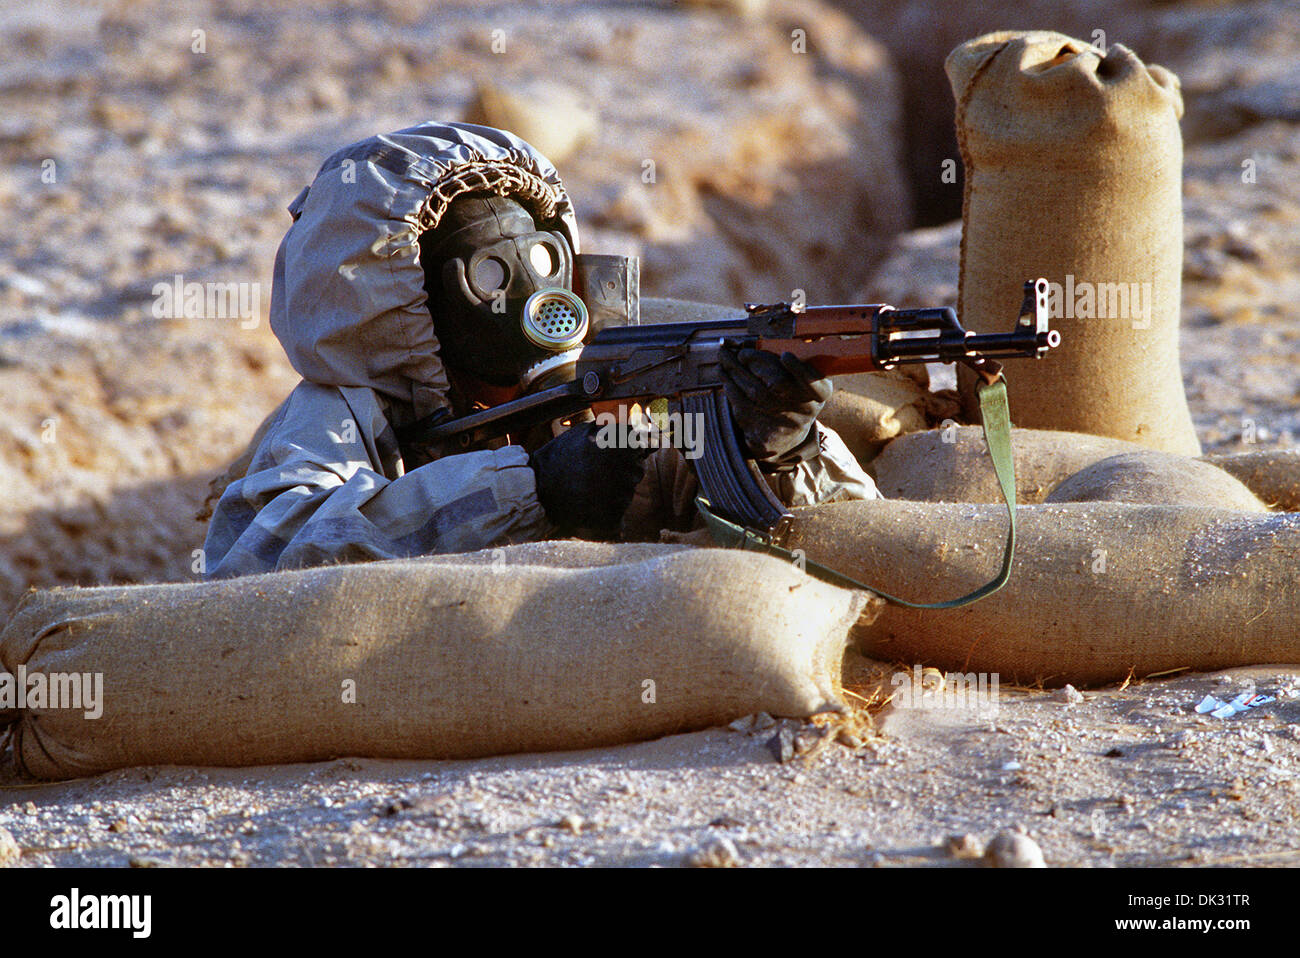 Ein syrischer Soldat soll ein AK-47 Sturmgewehr aus seiner Position in einem Erdloch während einer Feuerkraft Demonstrationsteil der Operation Desert Shield 14. Februar 1991 in Saudi Arabien. Der Soldat trägt ein sowjetischer Modell ShMS-nuklearen-biologisch-chemische Kriegsführung-Masken. Stockfoto